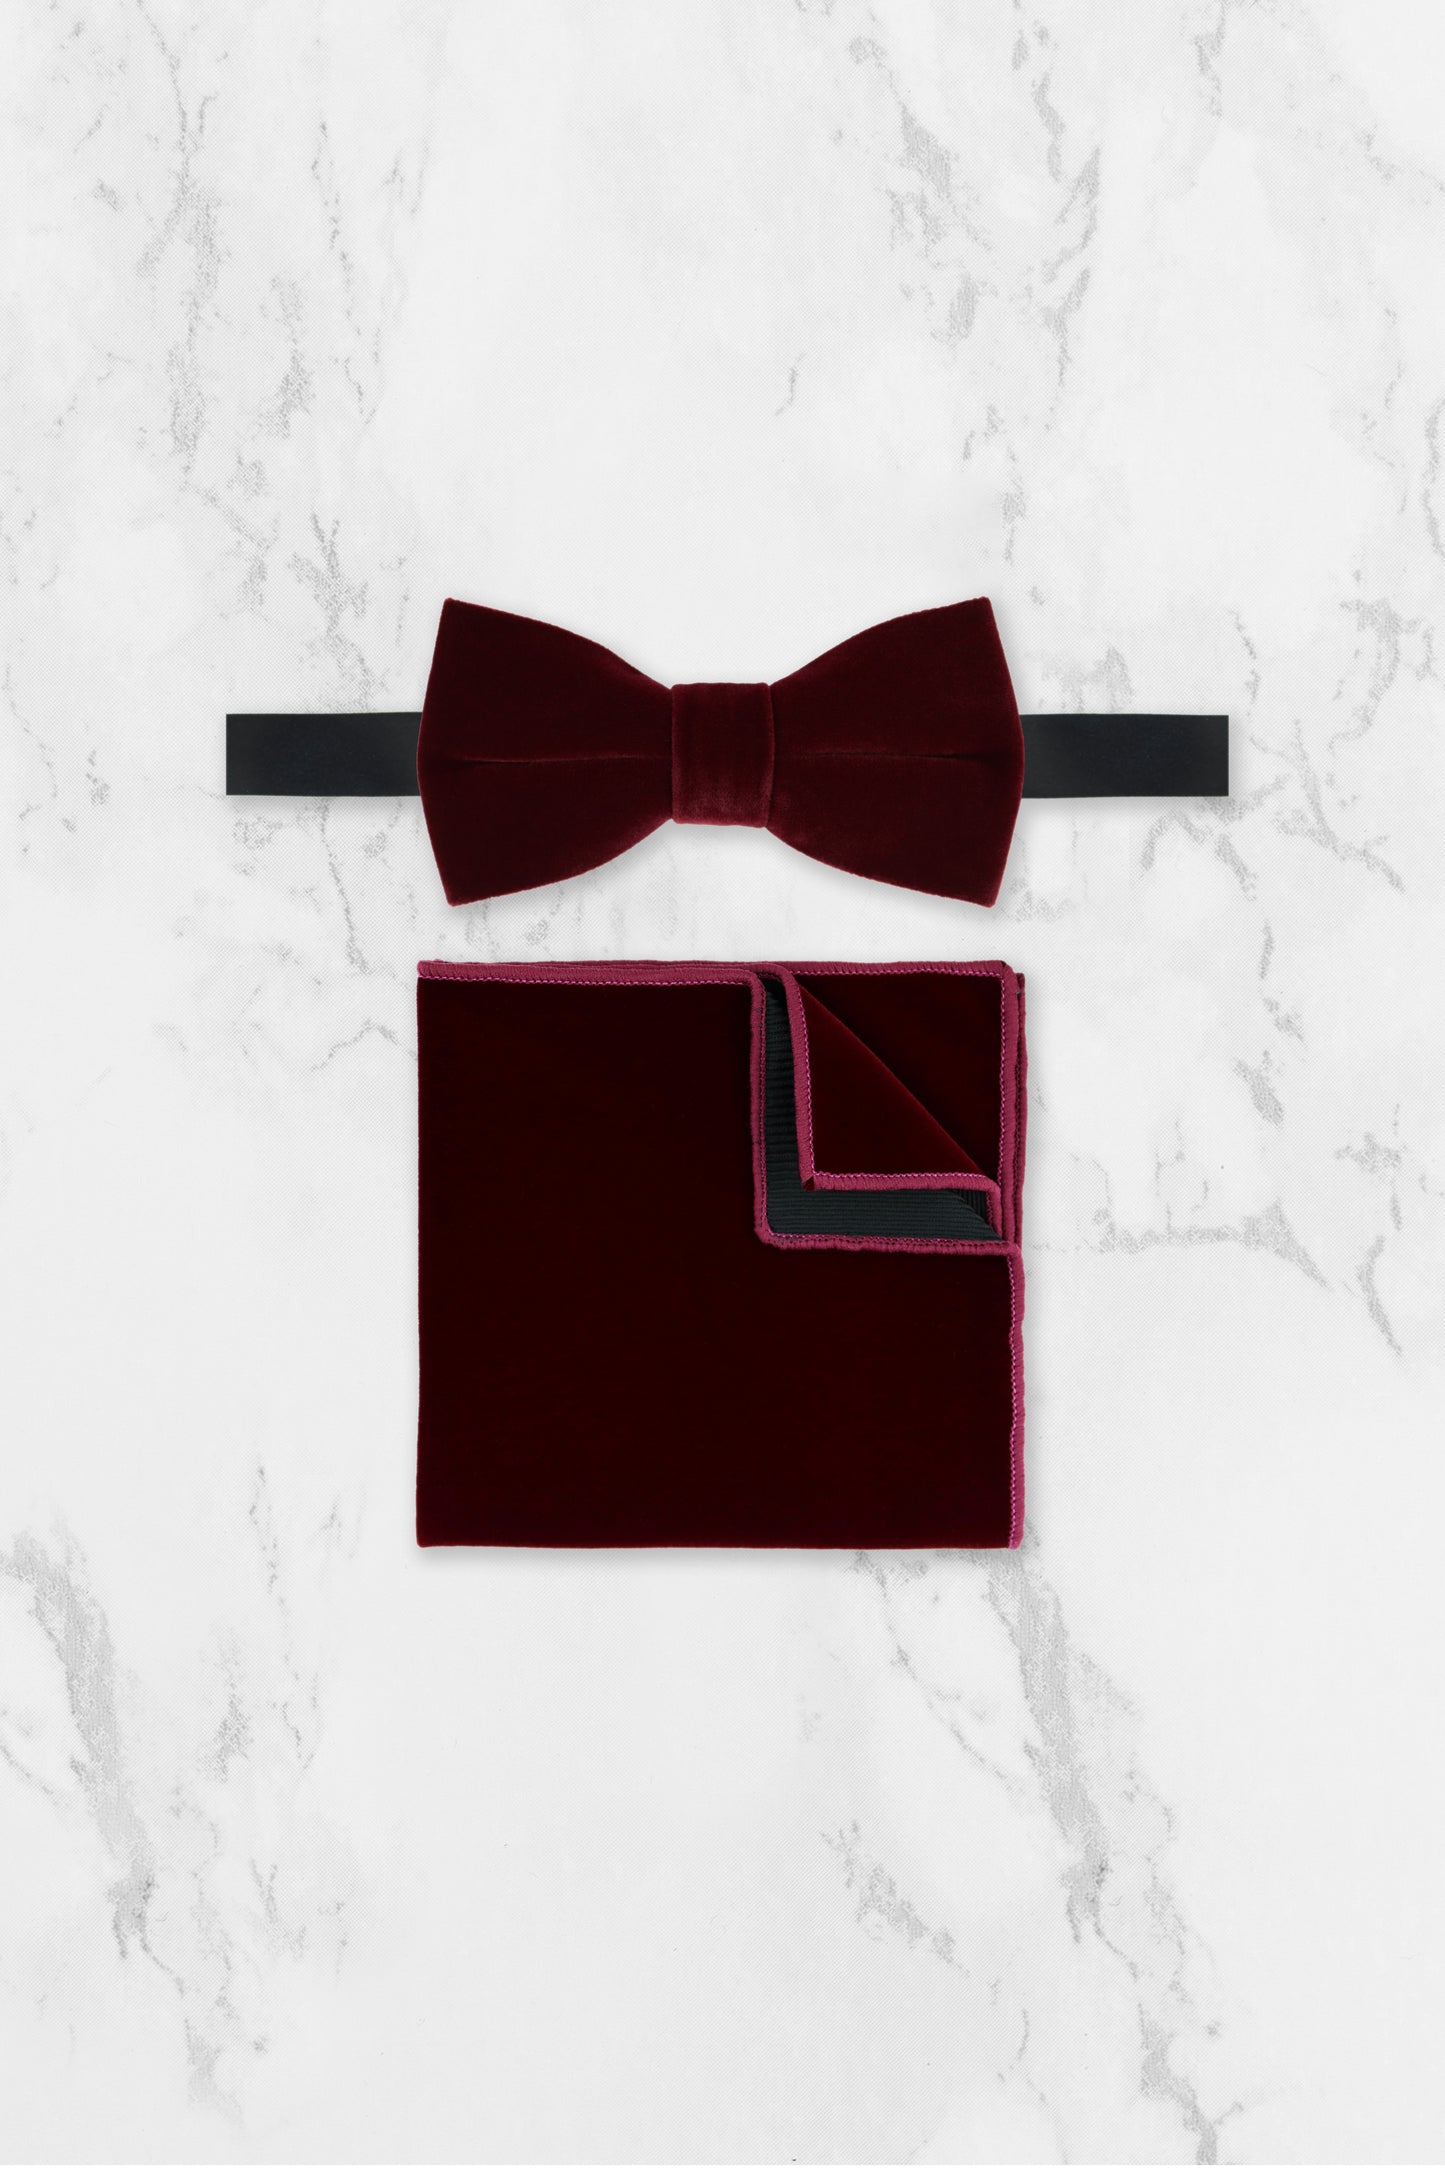 100% Velvet Bow Tie - Burgundy Red